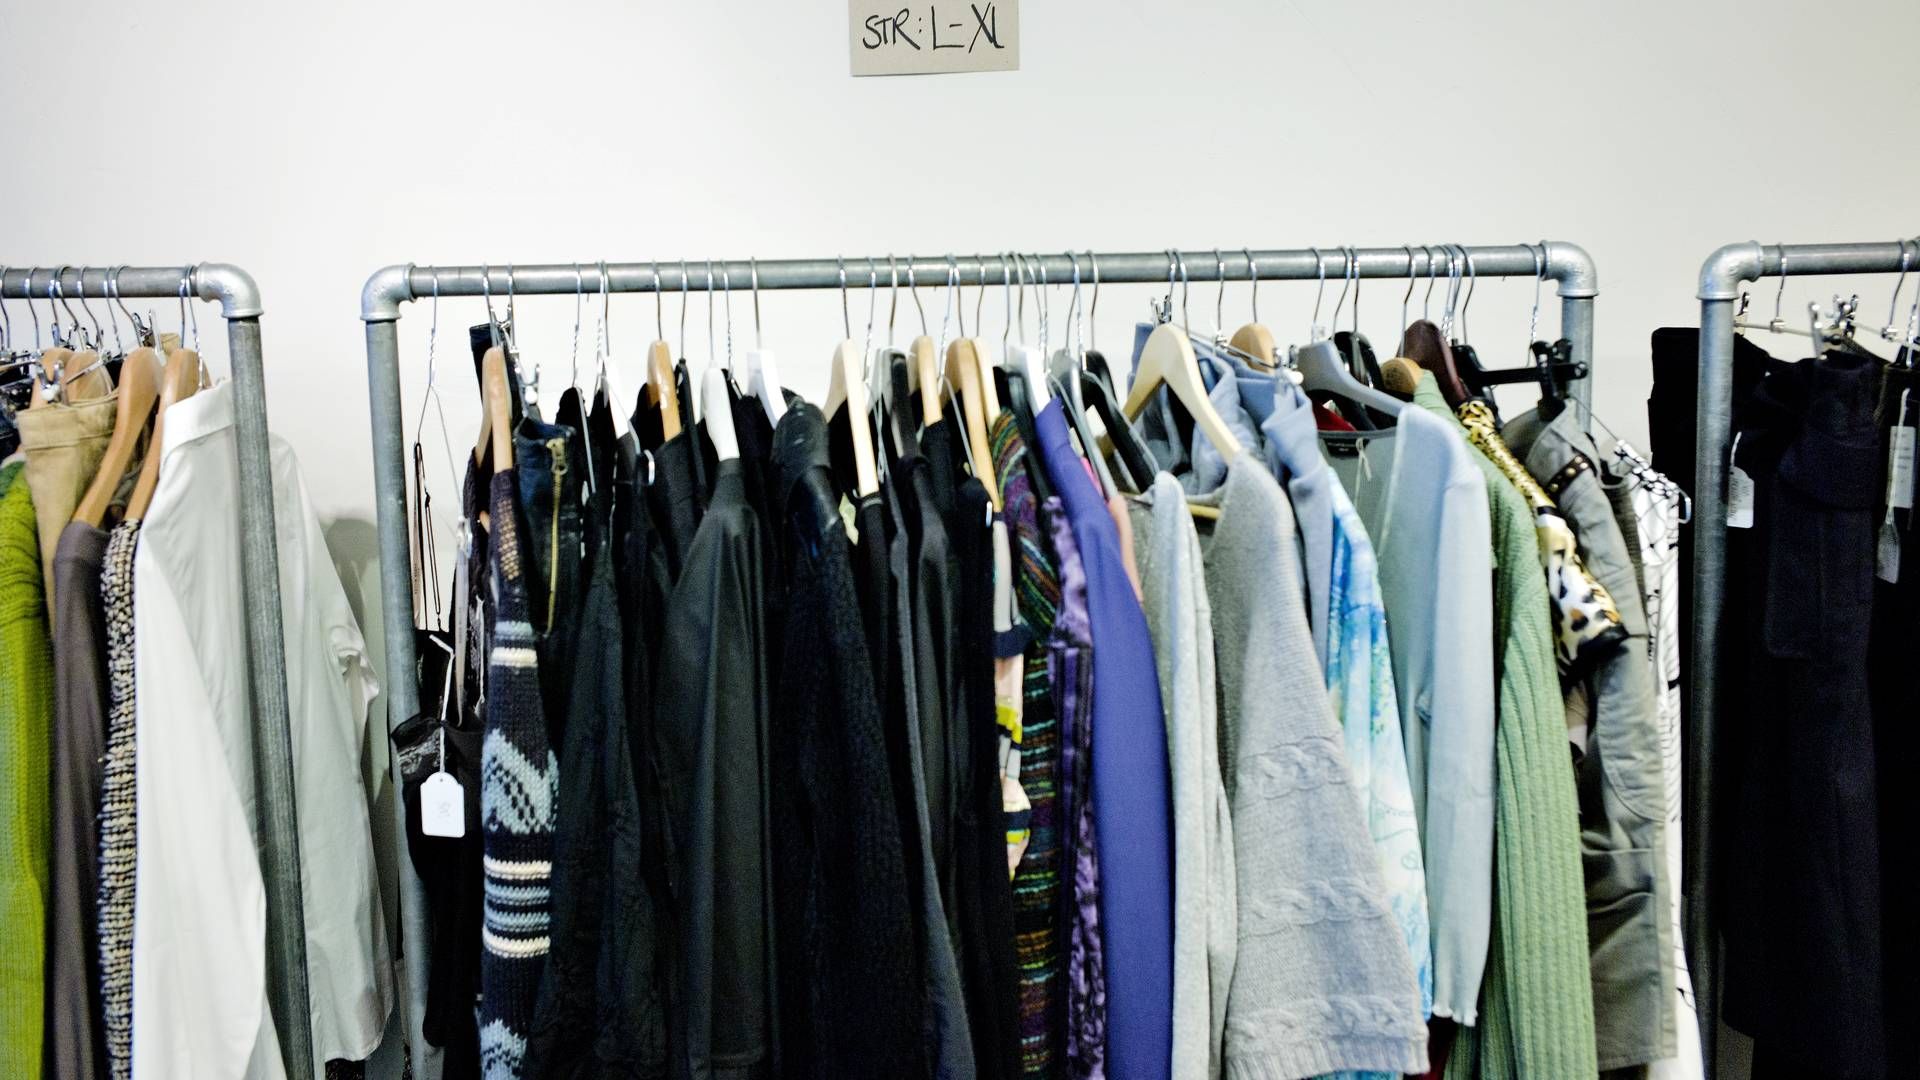 Trendsales er især kendt som en platform for salg af brugt tøj. | Foto: Casper Dalhoff/Ritzau Scanpix